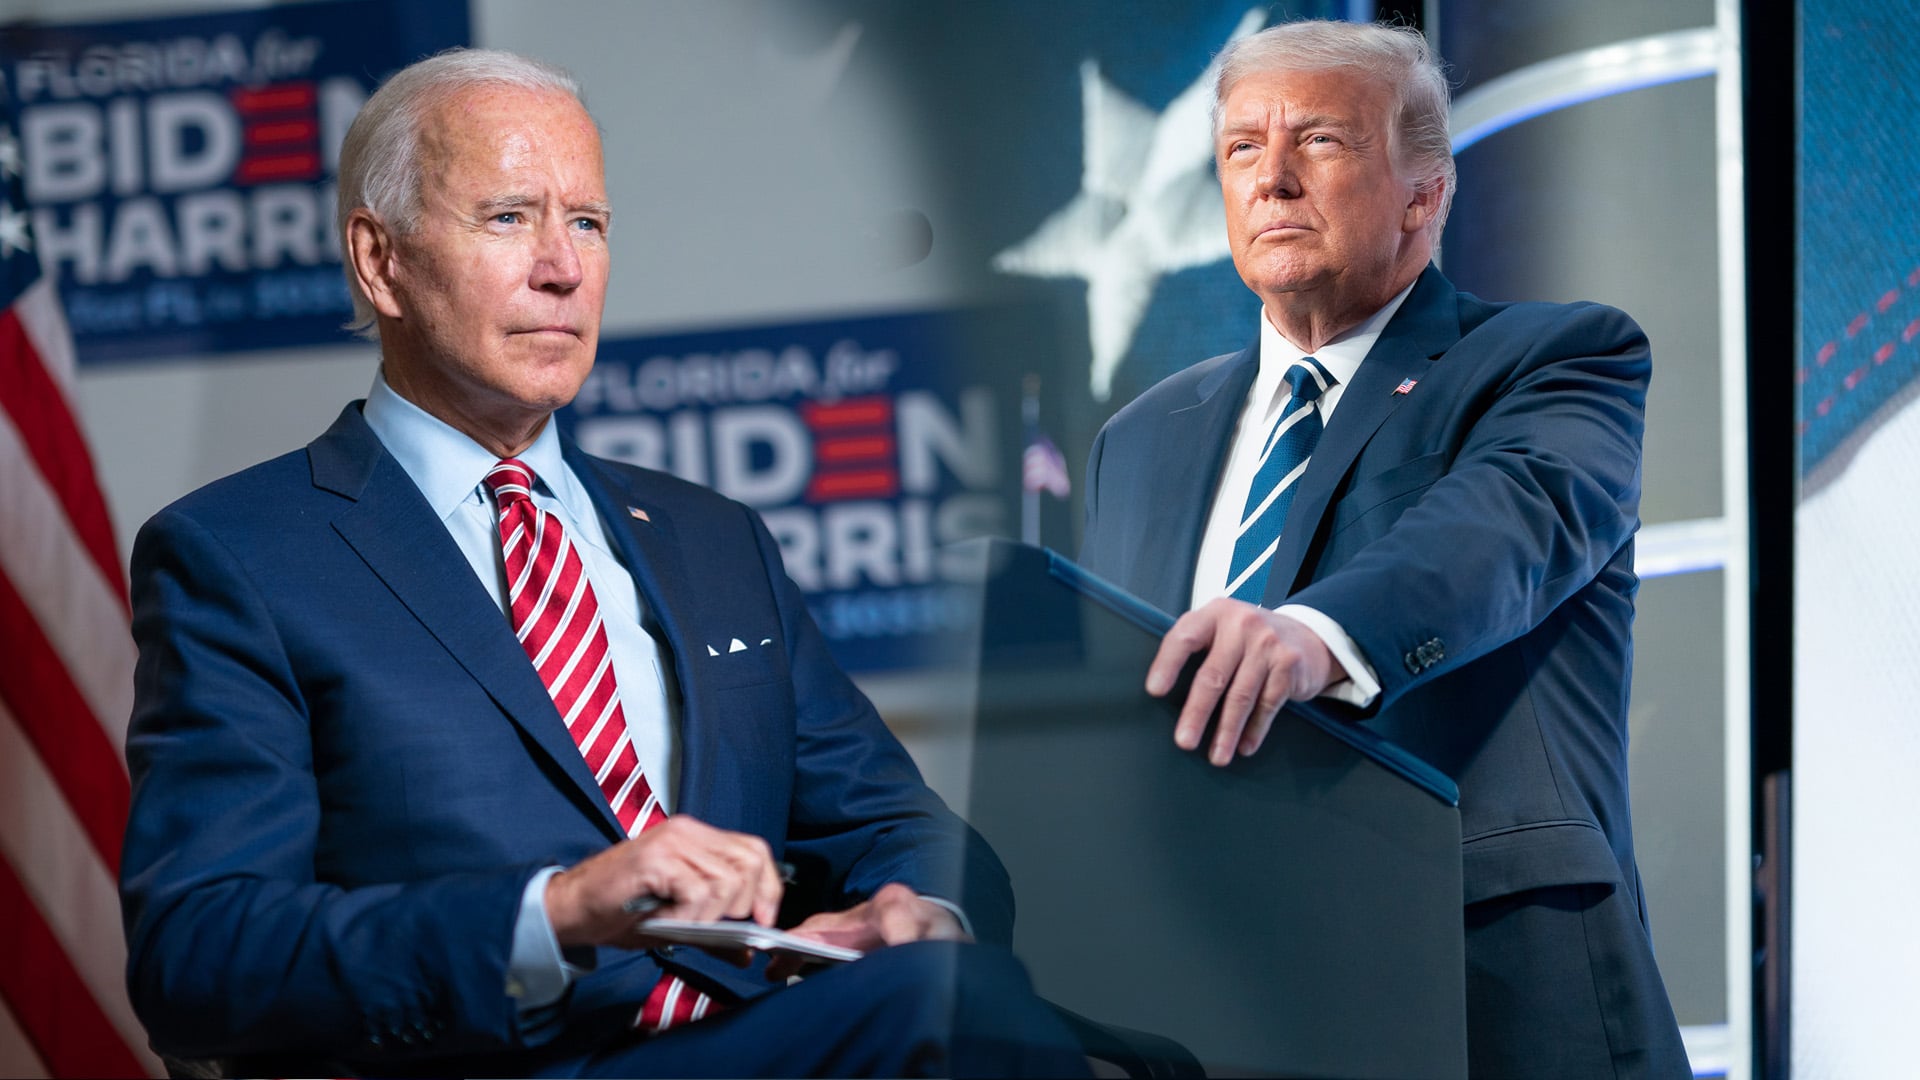 Sie bewerben sich um das Präsidentenamt: Joe Biden und Donald Trump